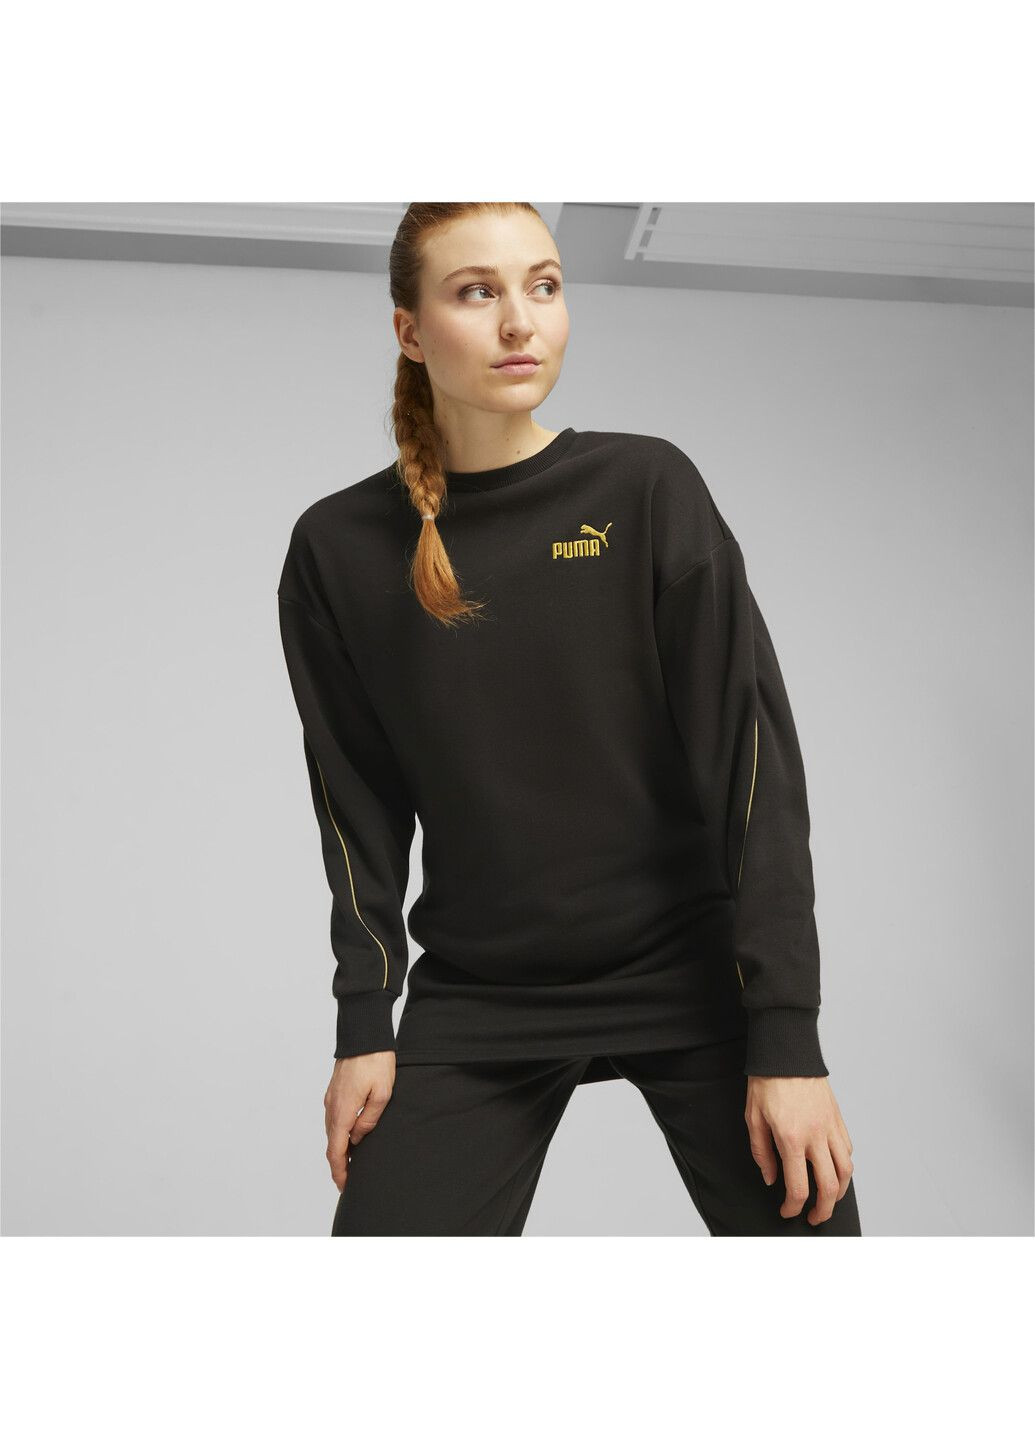 Чорна спортивна сукня ess+ minimal gold women's dress Puma однотонна